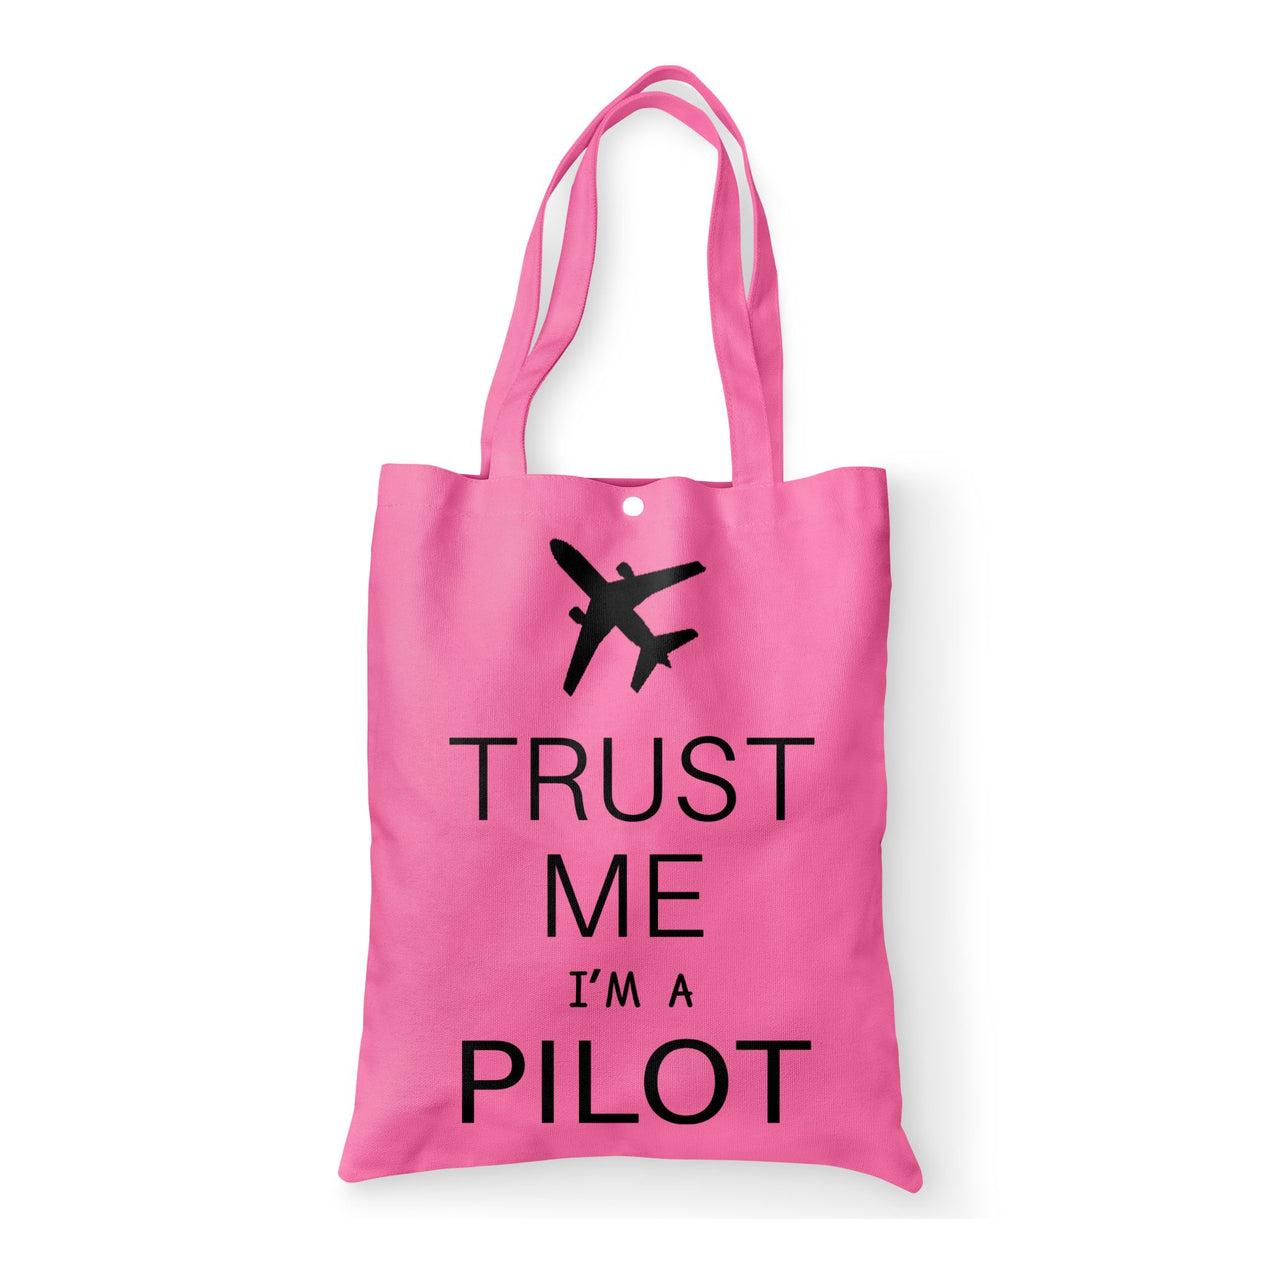 Trust Me I'm a Pilot 2 Designed Tote Bags